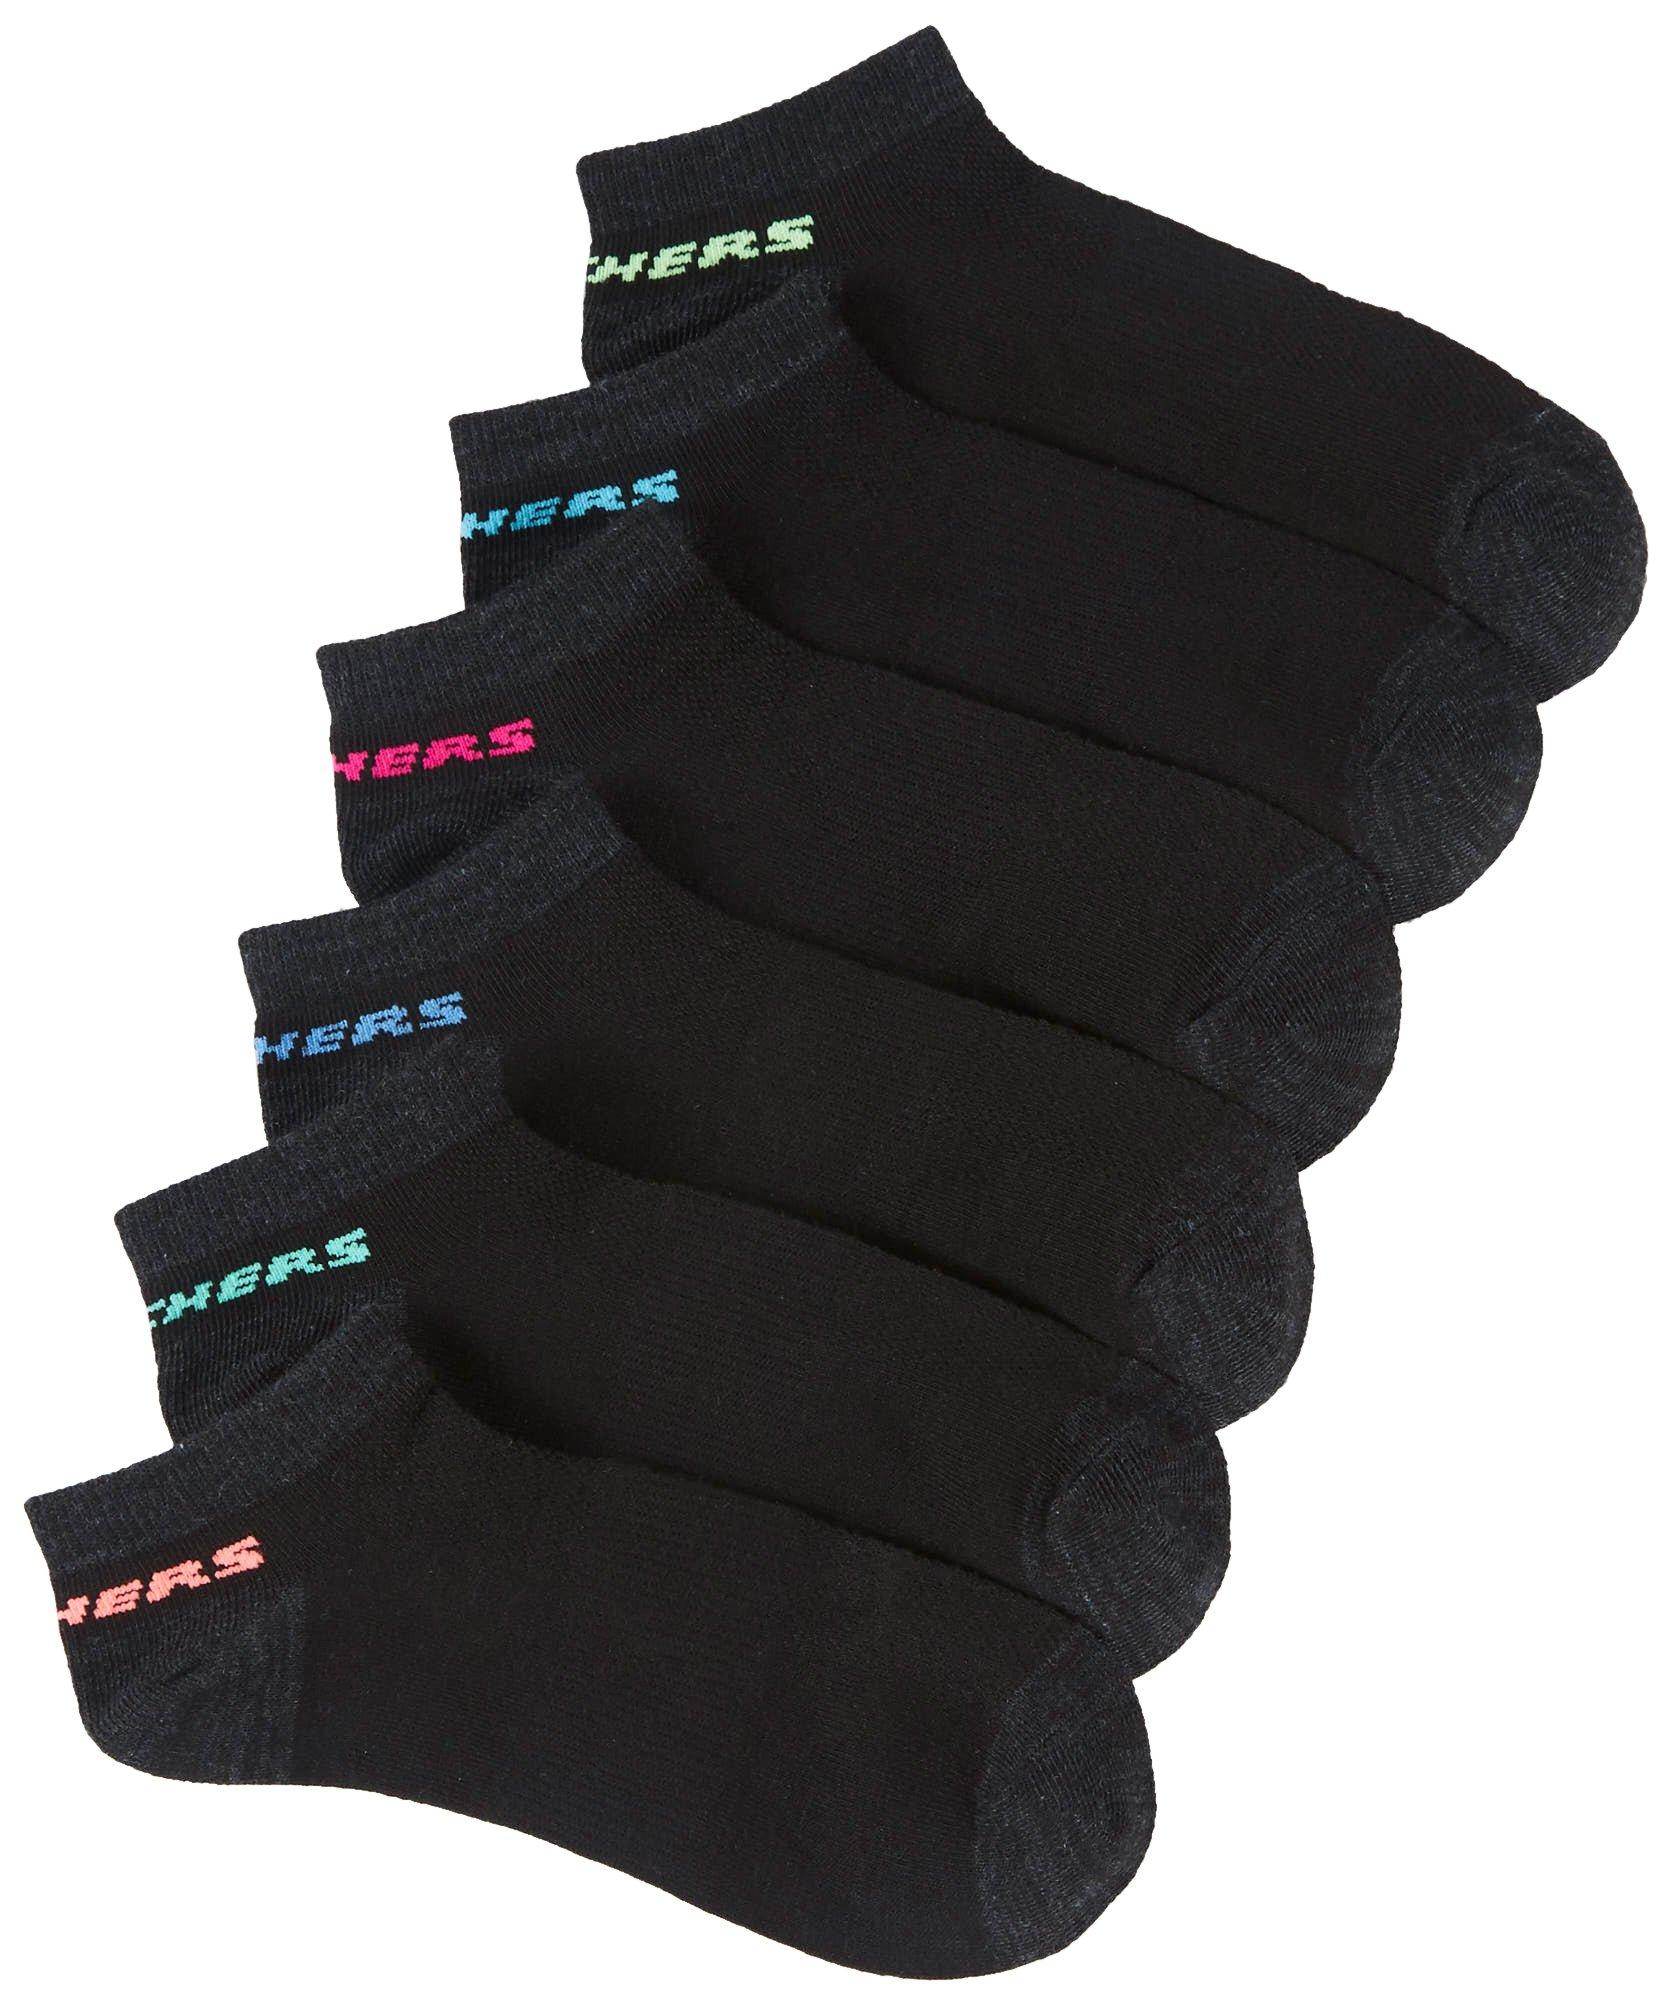 skechers women's low cut socks